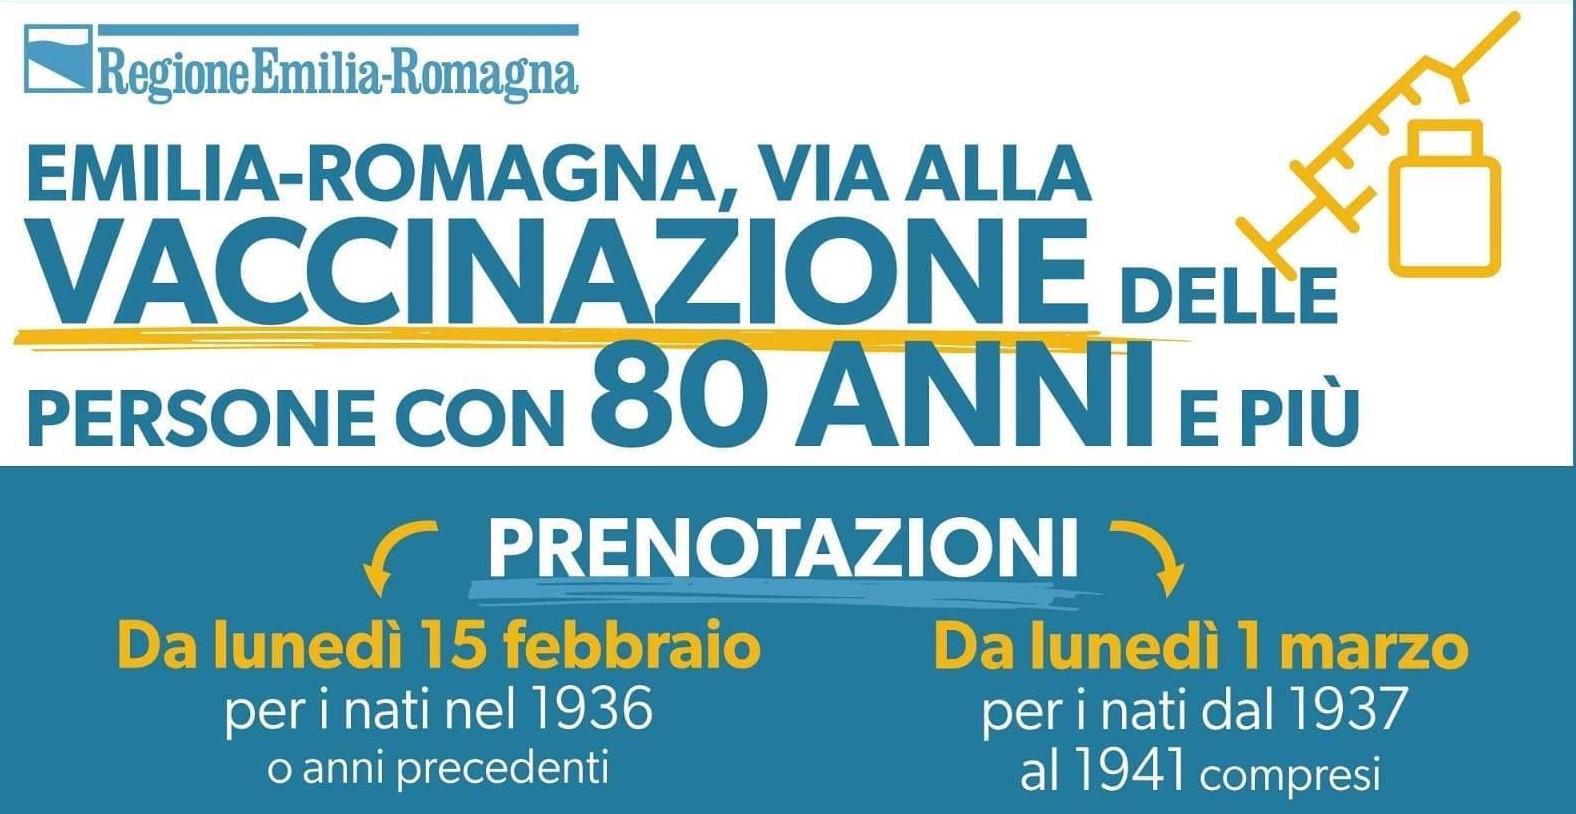 Covid-19, in Emilia-Romagna si parte con le vaccinazioni per le persone che hanno 80 anni e più